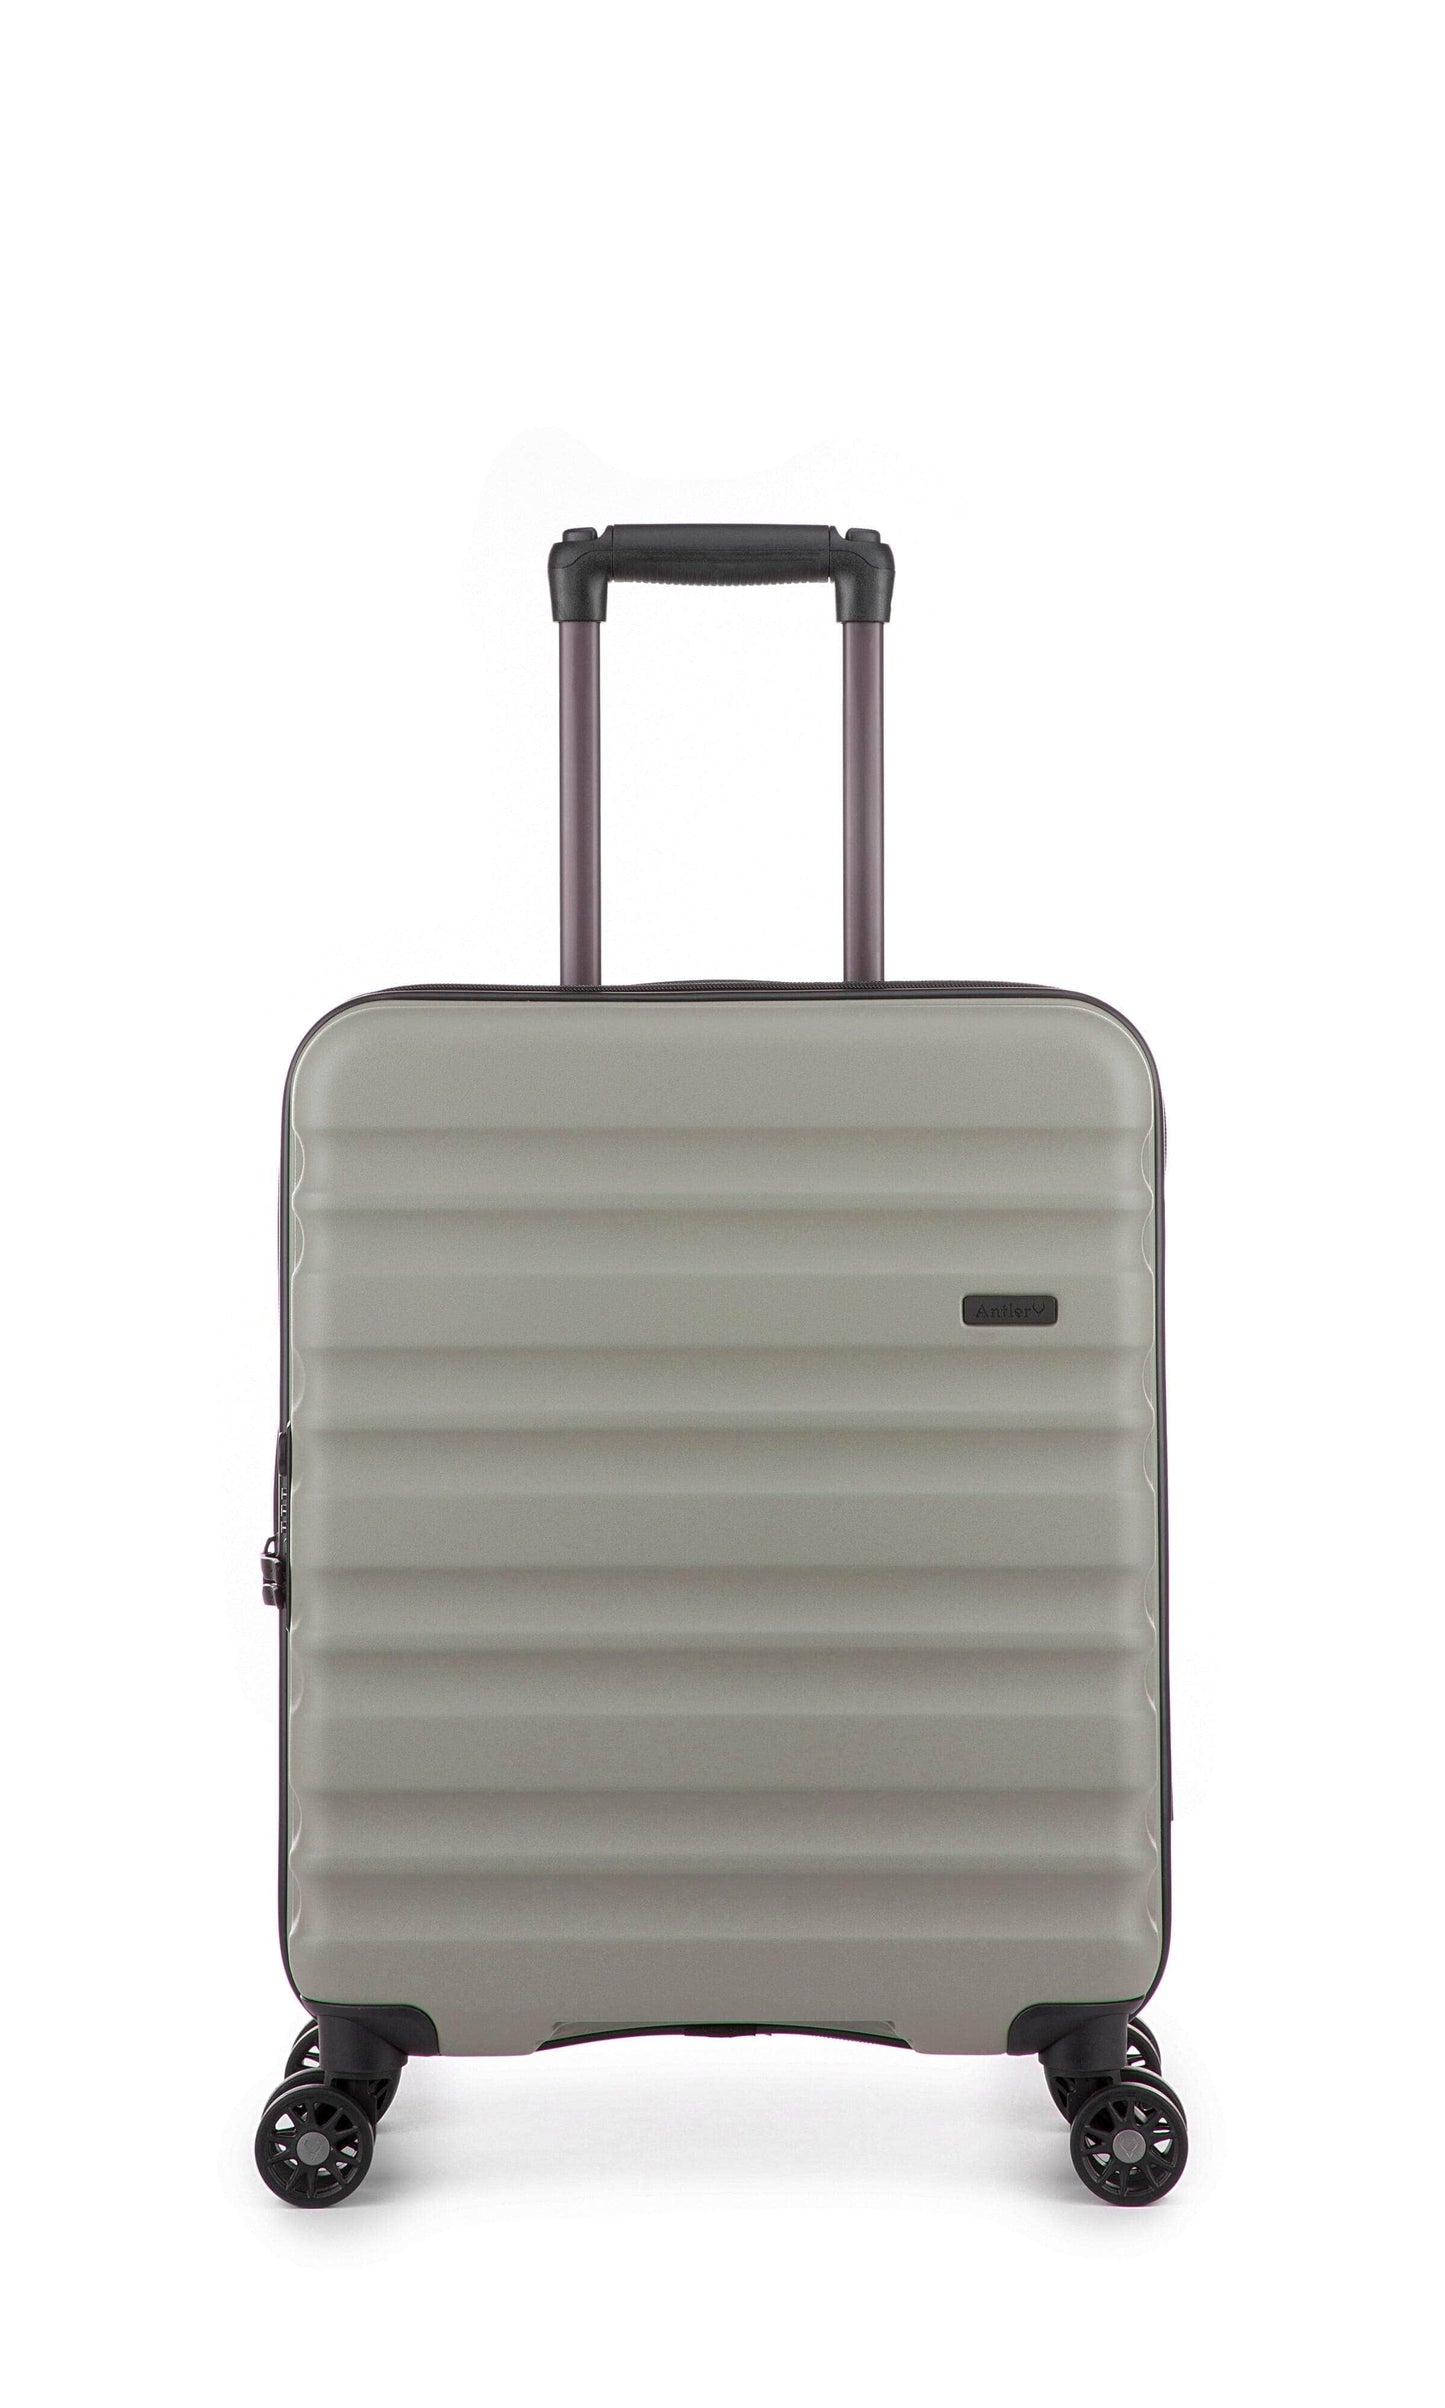 Antler Luggage -  Clifton cabin in sage - Hard Suitcases Clifton 55x40x20cm Cabin Suitcase Sage | Hard Suitcase | Antler UK